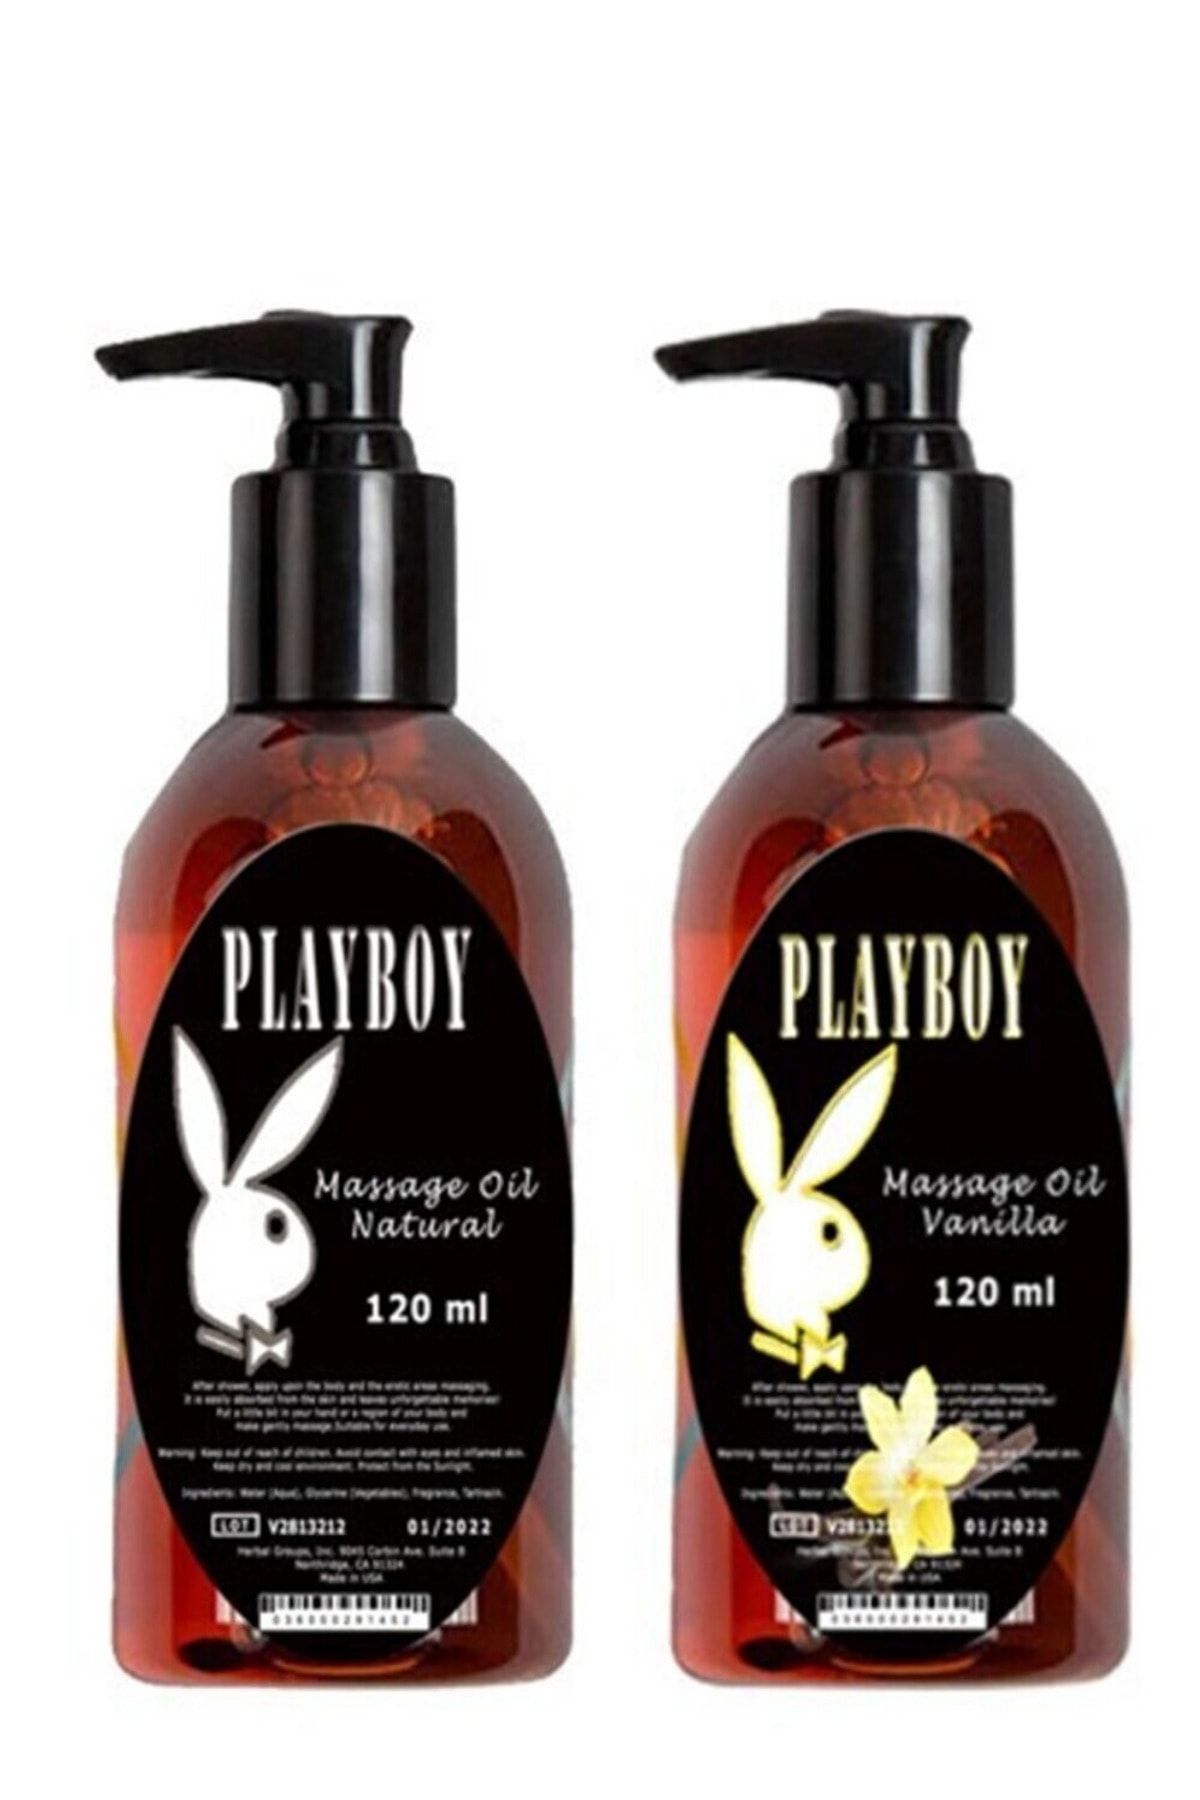 Playboy Vanilya Aromalı Ve Natural Erkek Istek Arttırıcı Rahatlatıcılı Vücut Aromaterapi Masaj 2 Adet 120ml